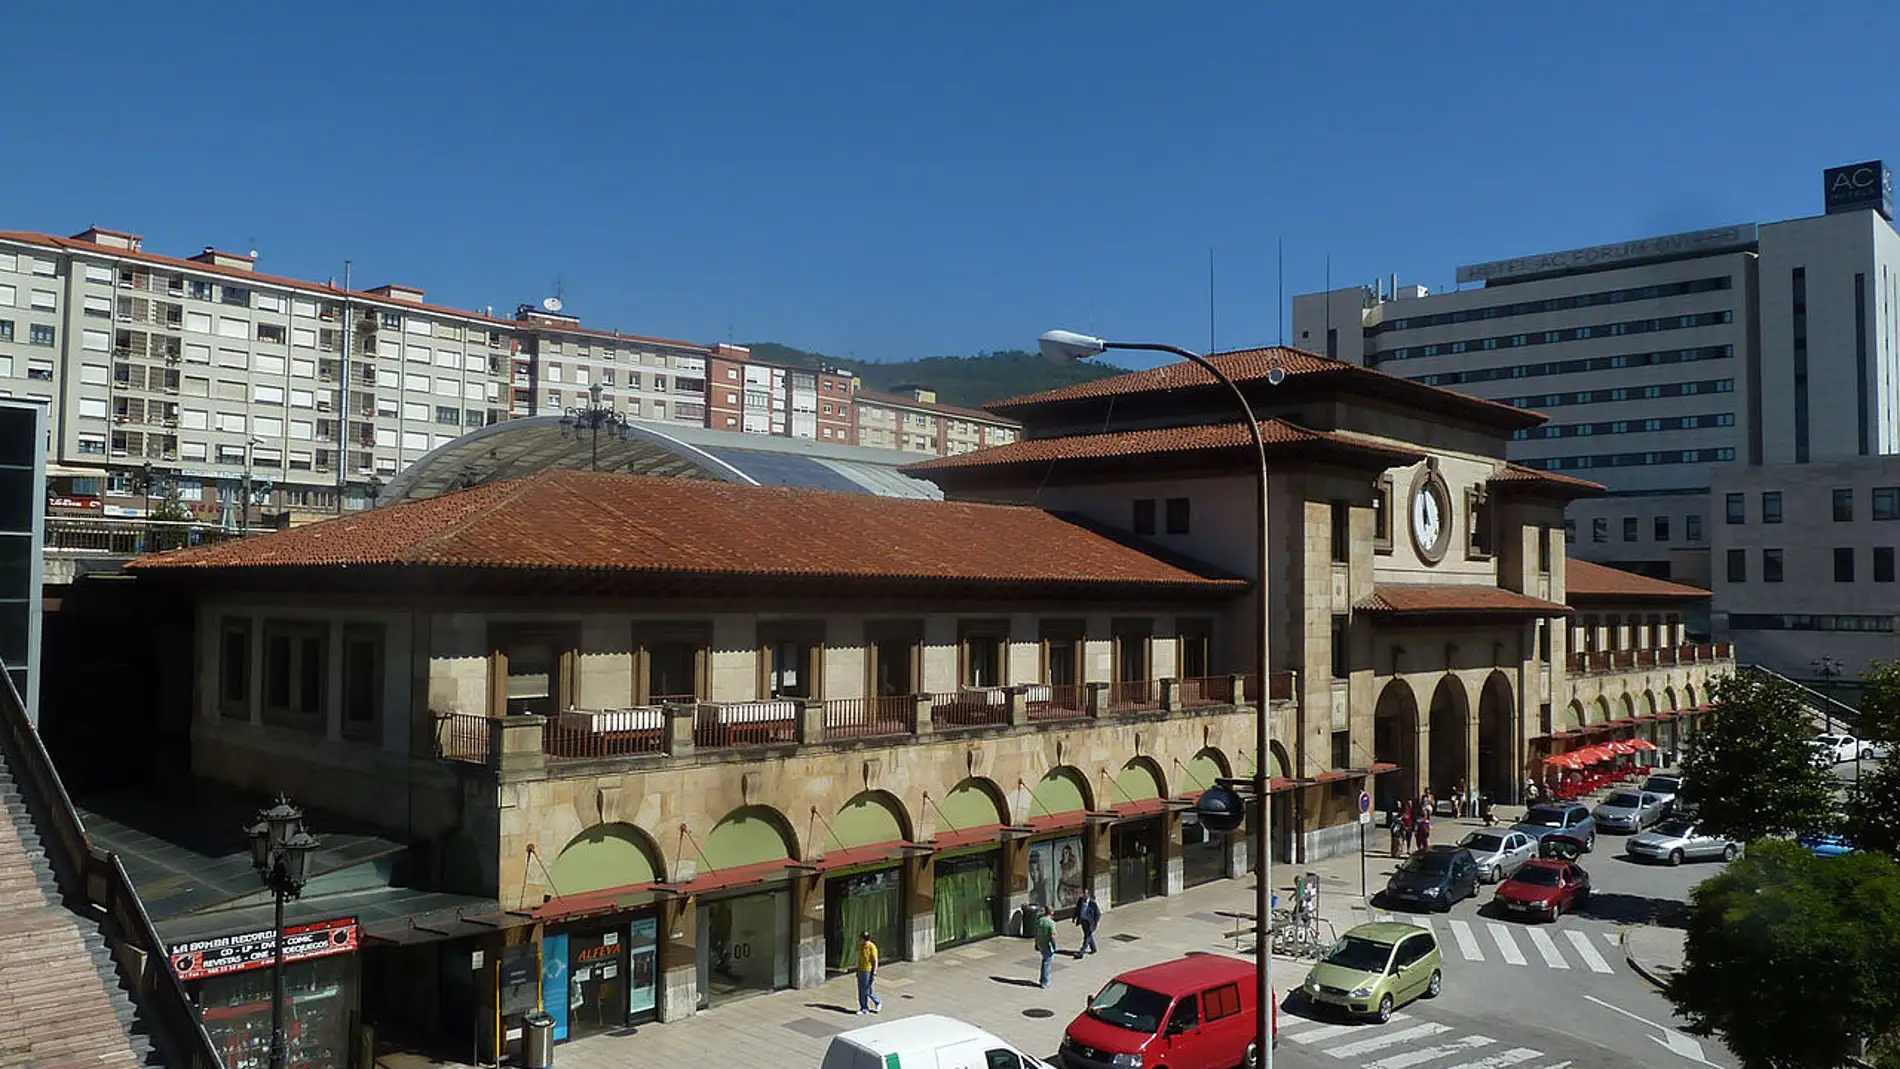 Estación Renfe Oviedo.